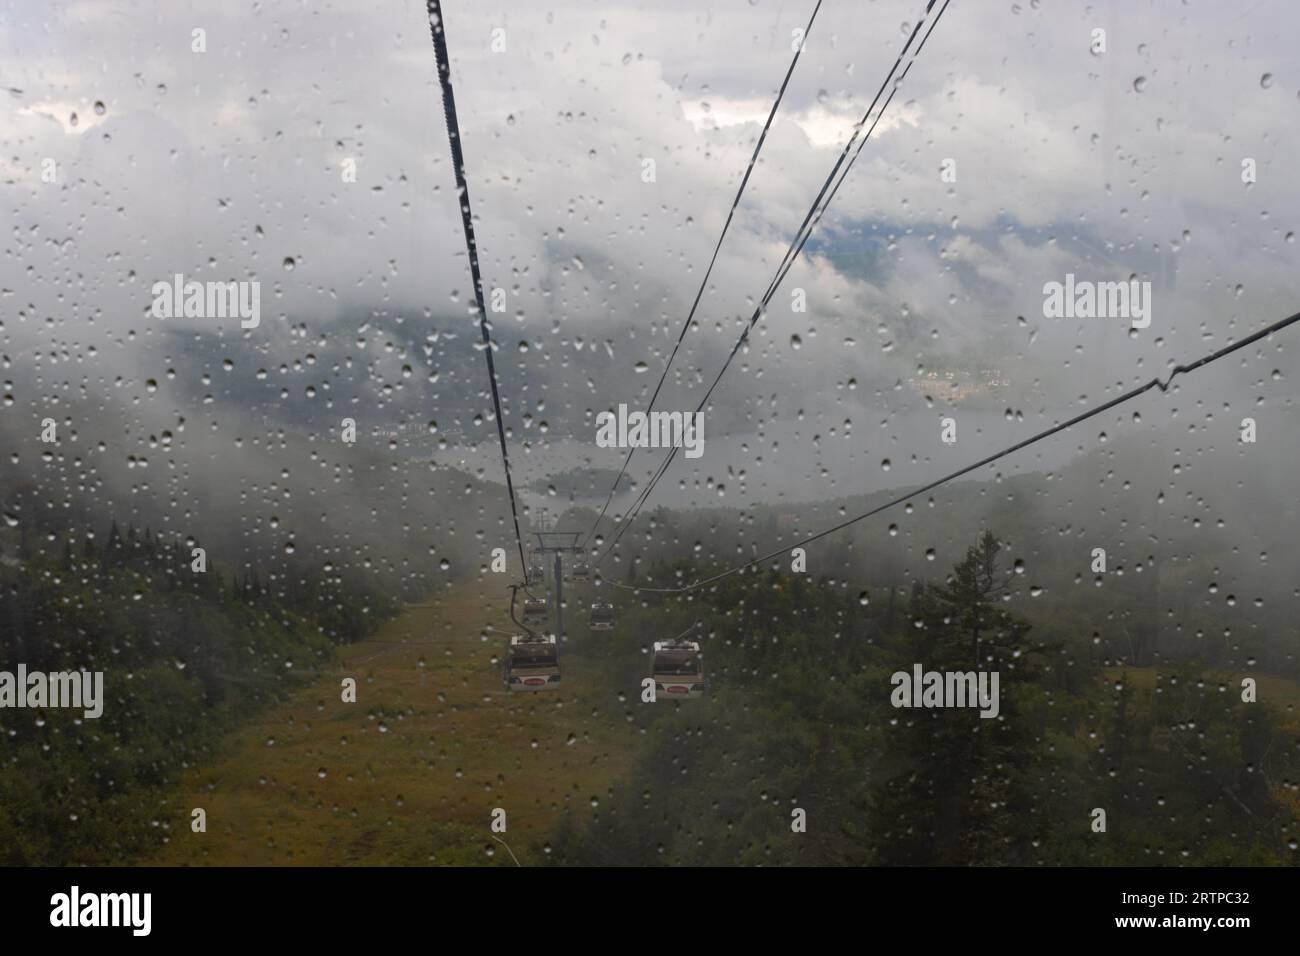 La vista attraverso la gondola è oscurata da pioggia, nebbia e graffi; un viaggio attraverso le nuvole Foto Stock